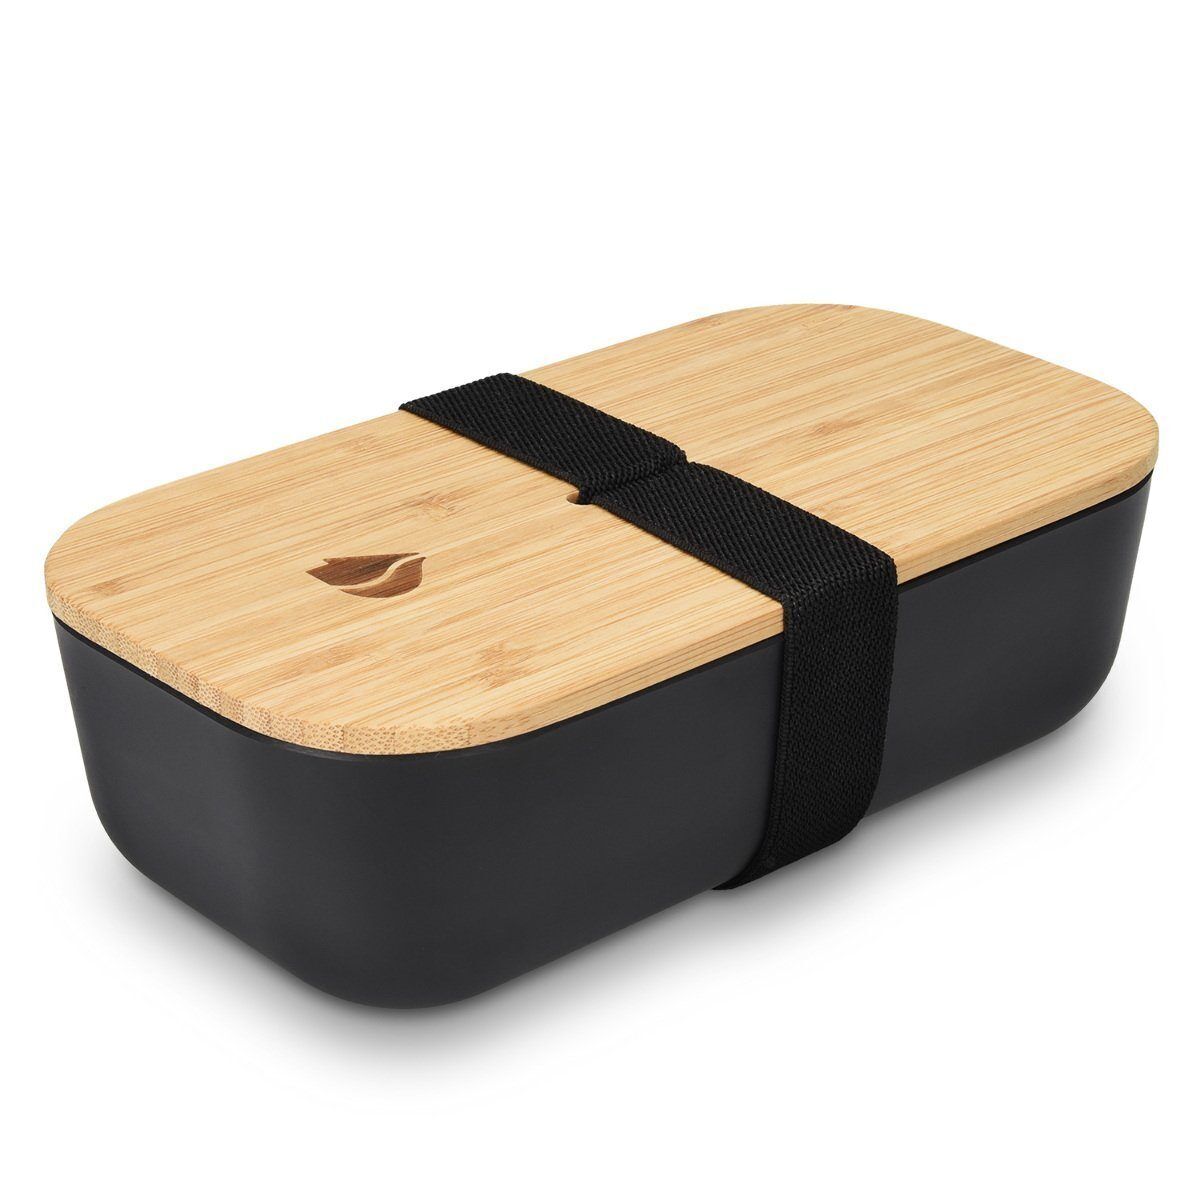 Lunchbox Bento Box mit Bambus Deckel  700ml